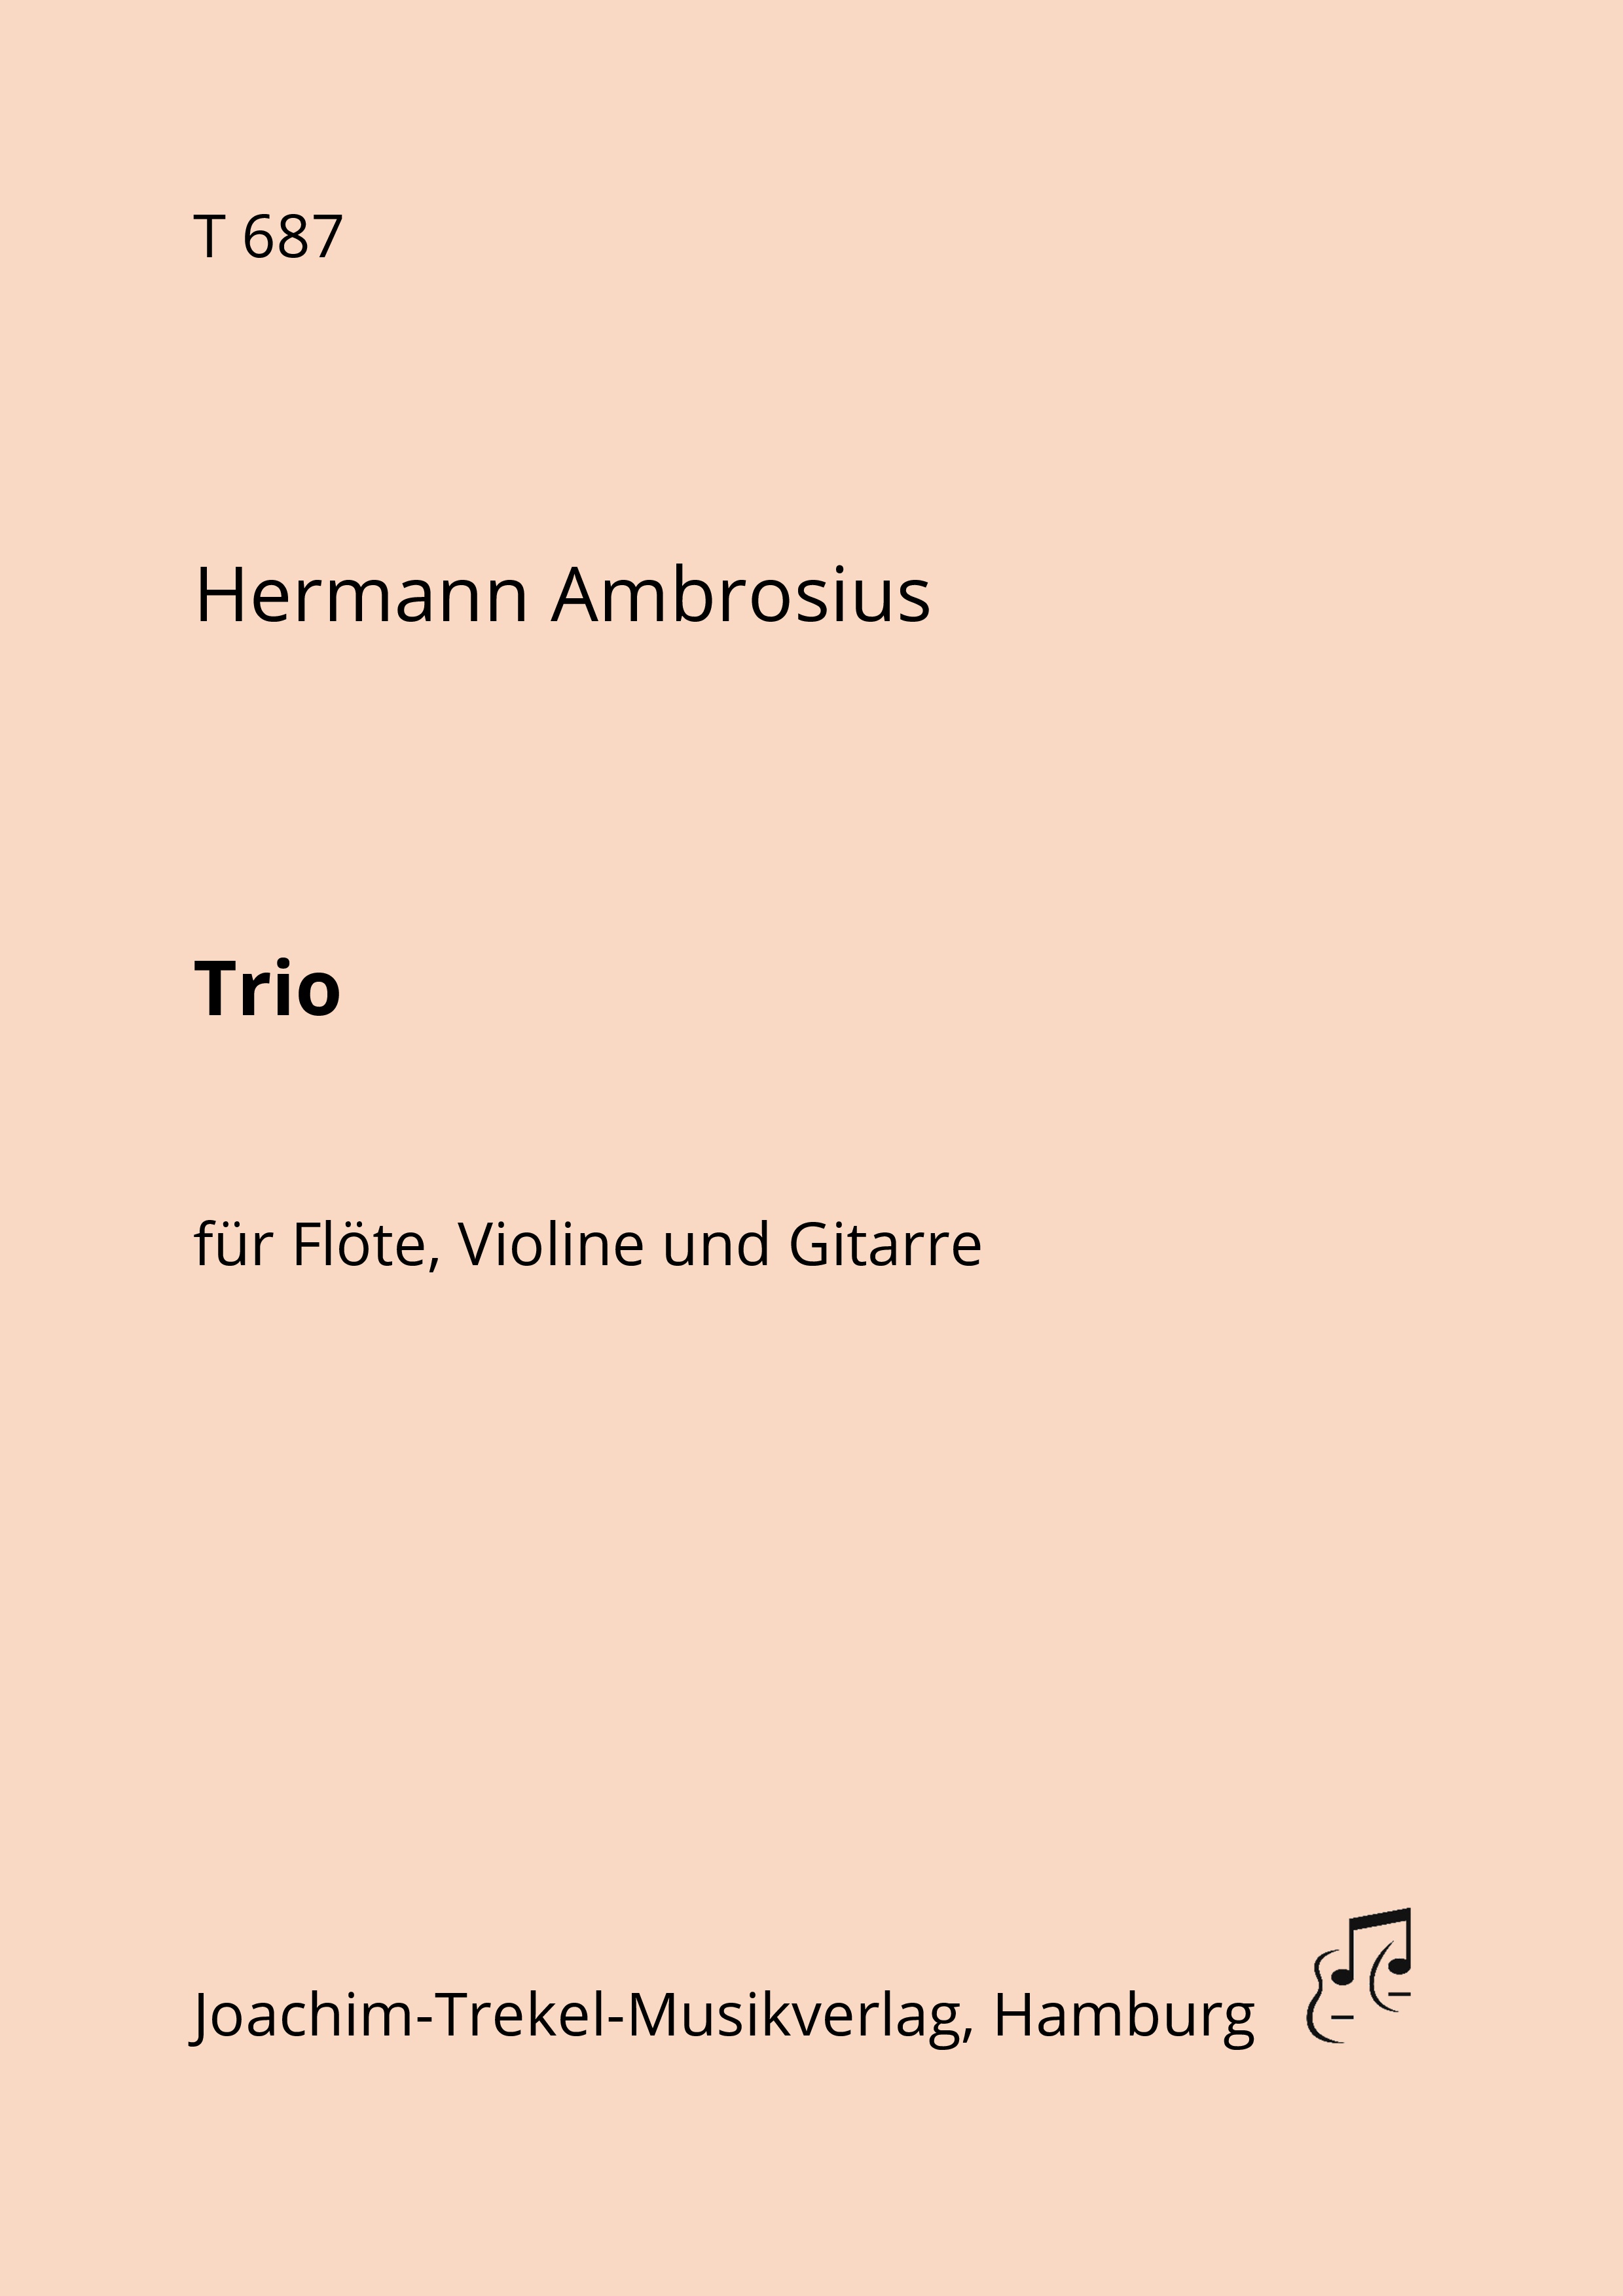 Trio G-Dur